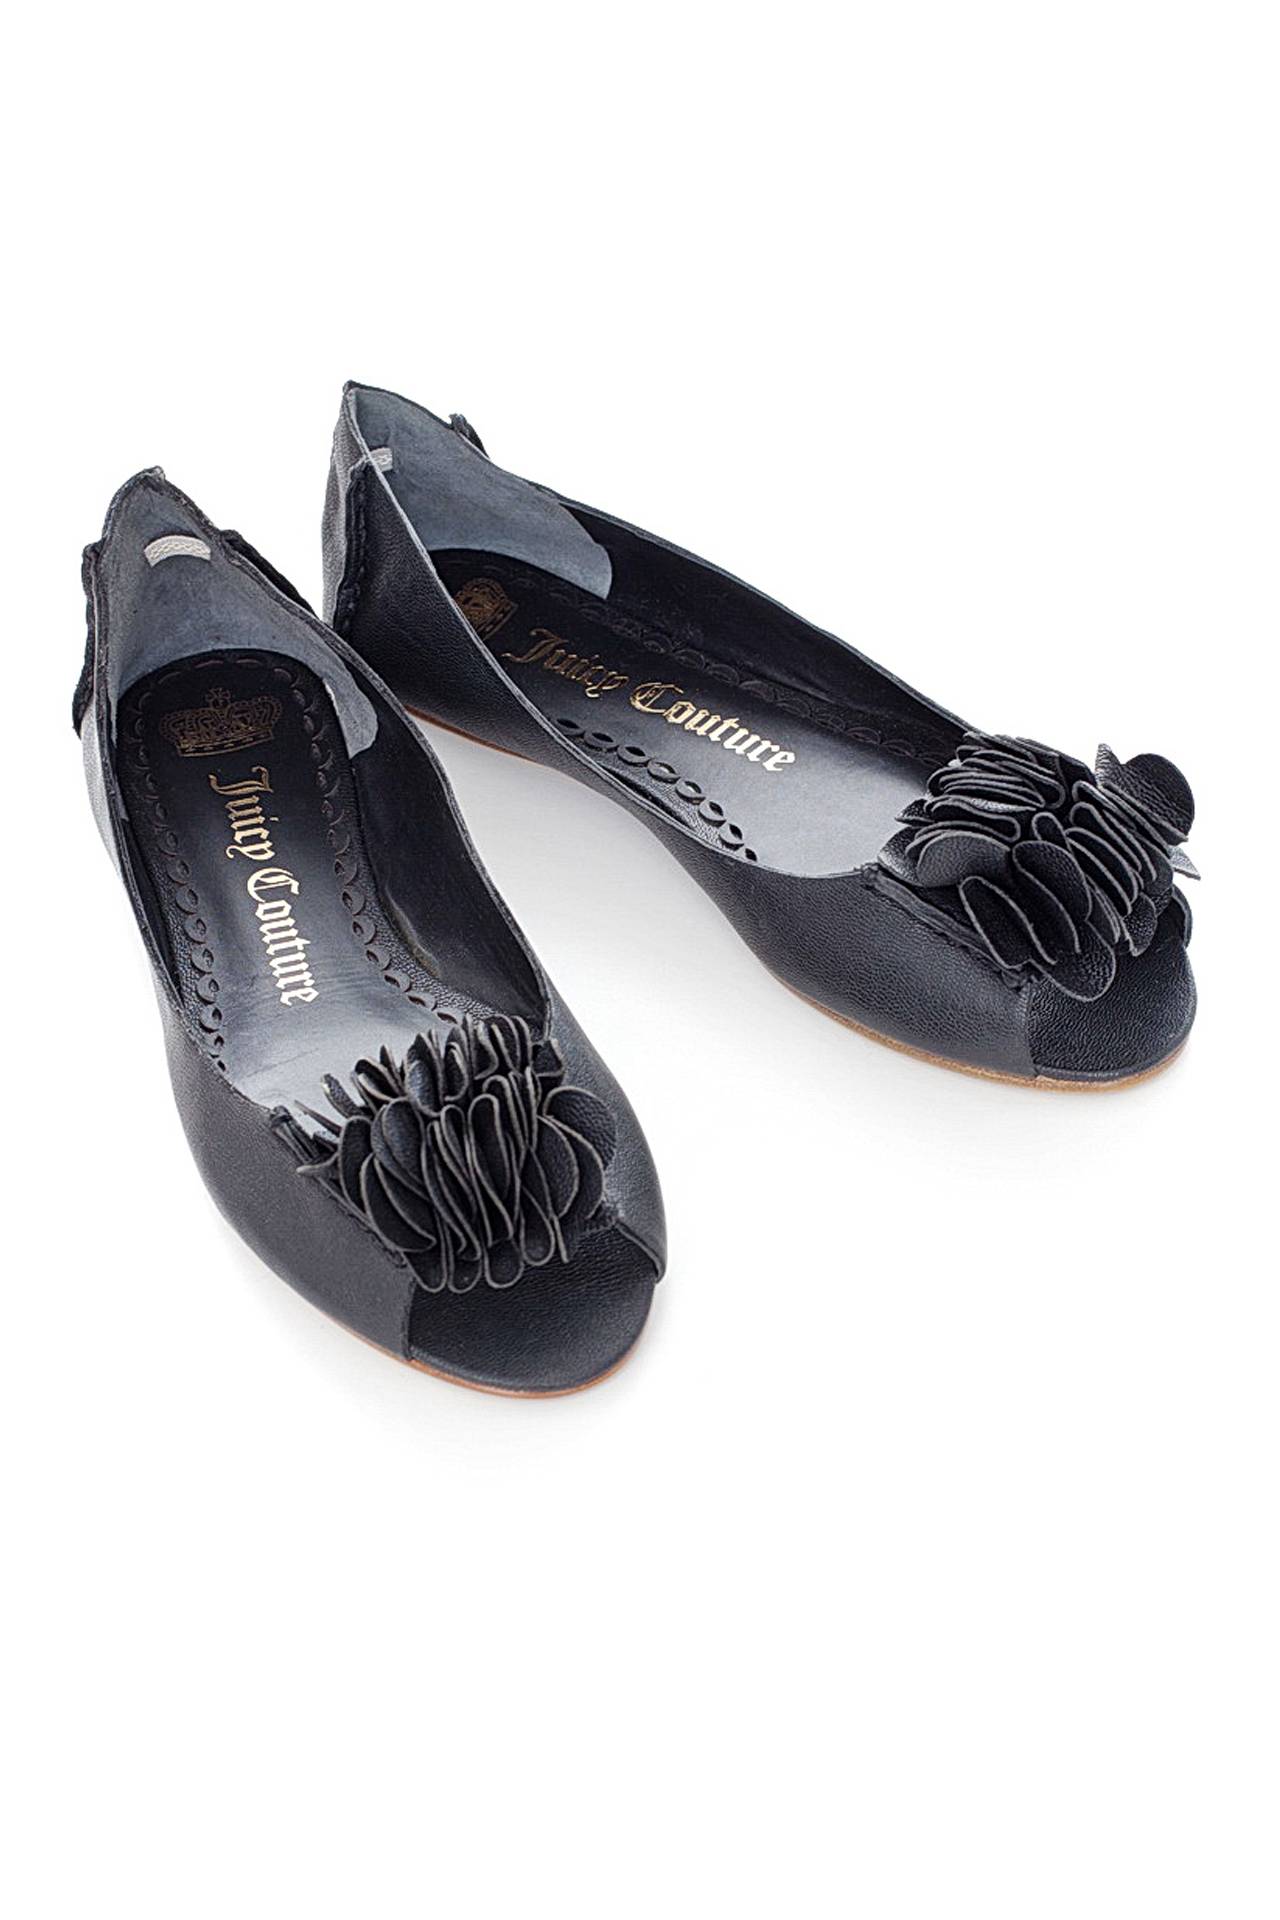 Обувь женская Балетки JUICY COUTURE (J128048/10.2). Купить за 5850 руб.